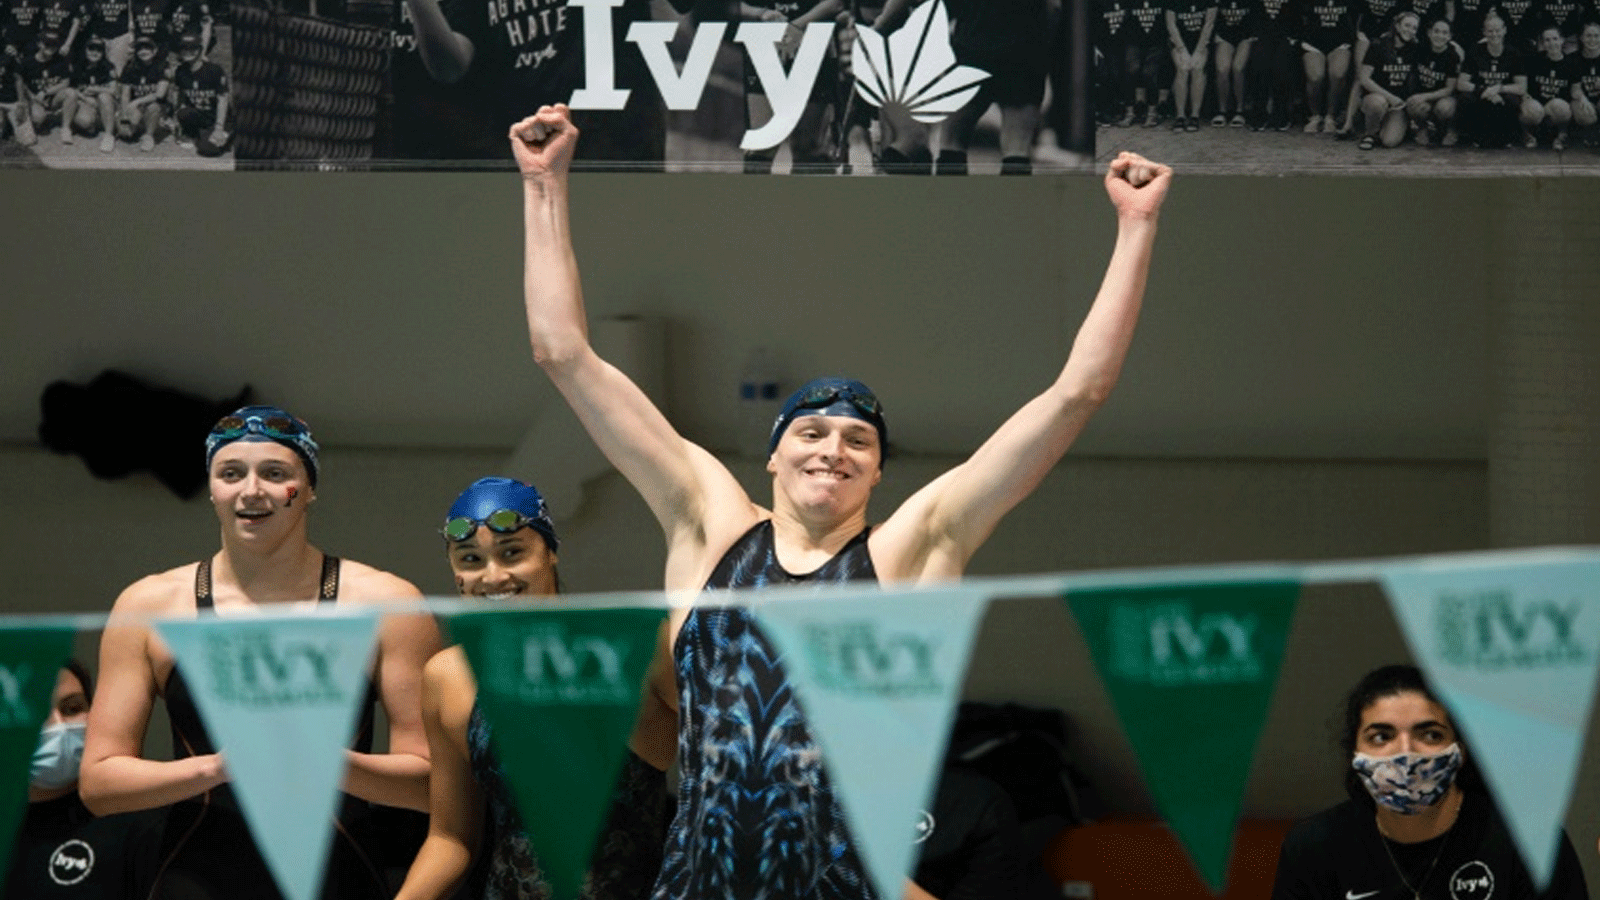 فازت السباحة الأميركية المتحولة جنسيًا ليا توماس في سباق 500 ياردة حرّة في وقت سابق من هذا العام